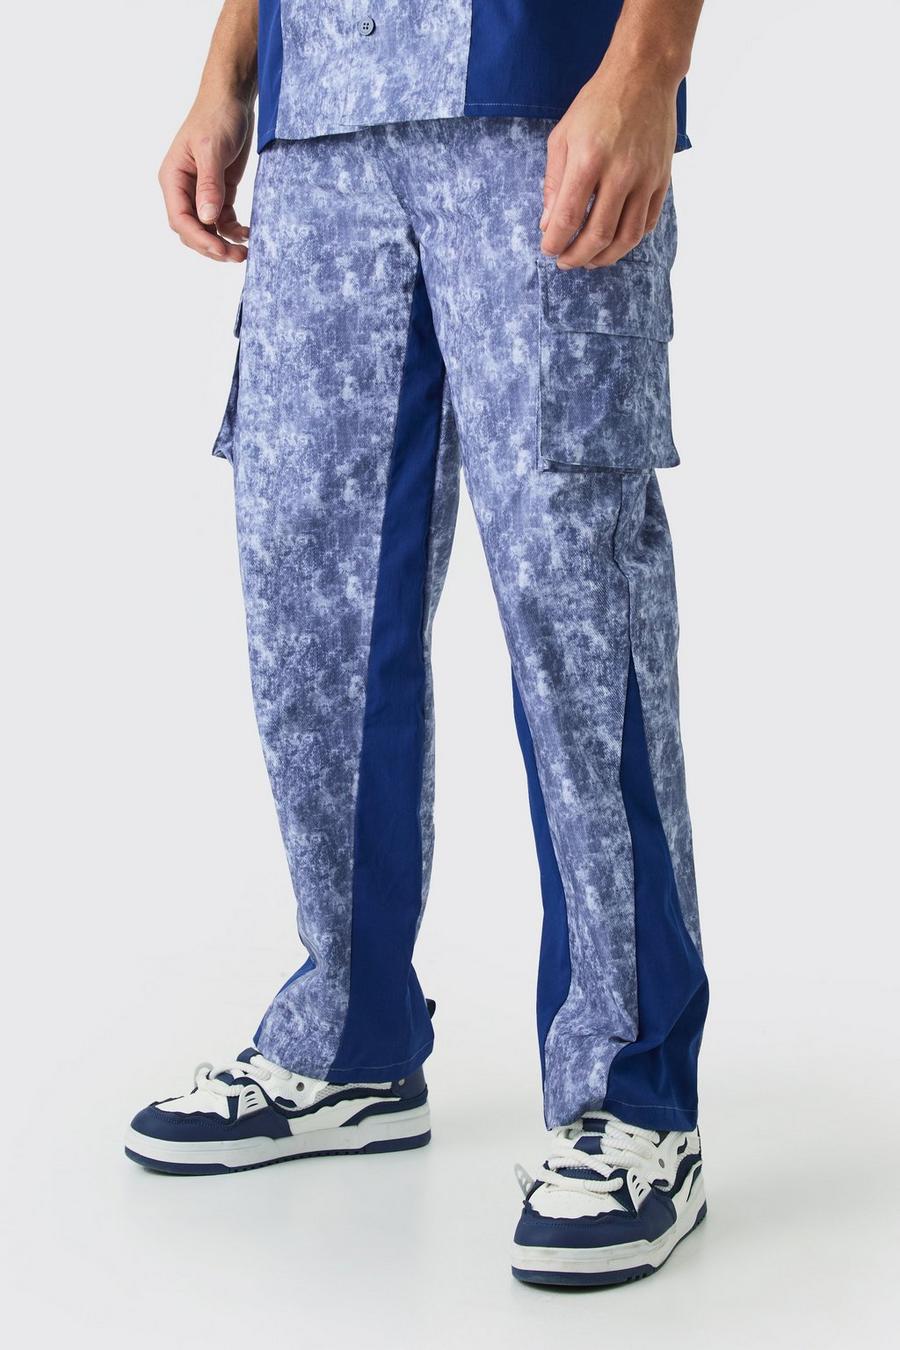 Pantaloni rilassati in fantasia militare con inserti in vita fissa, Denim-blue